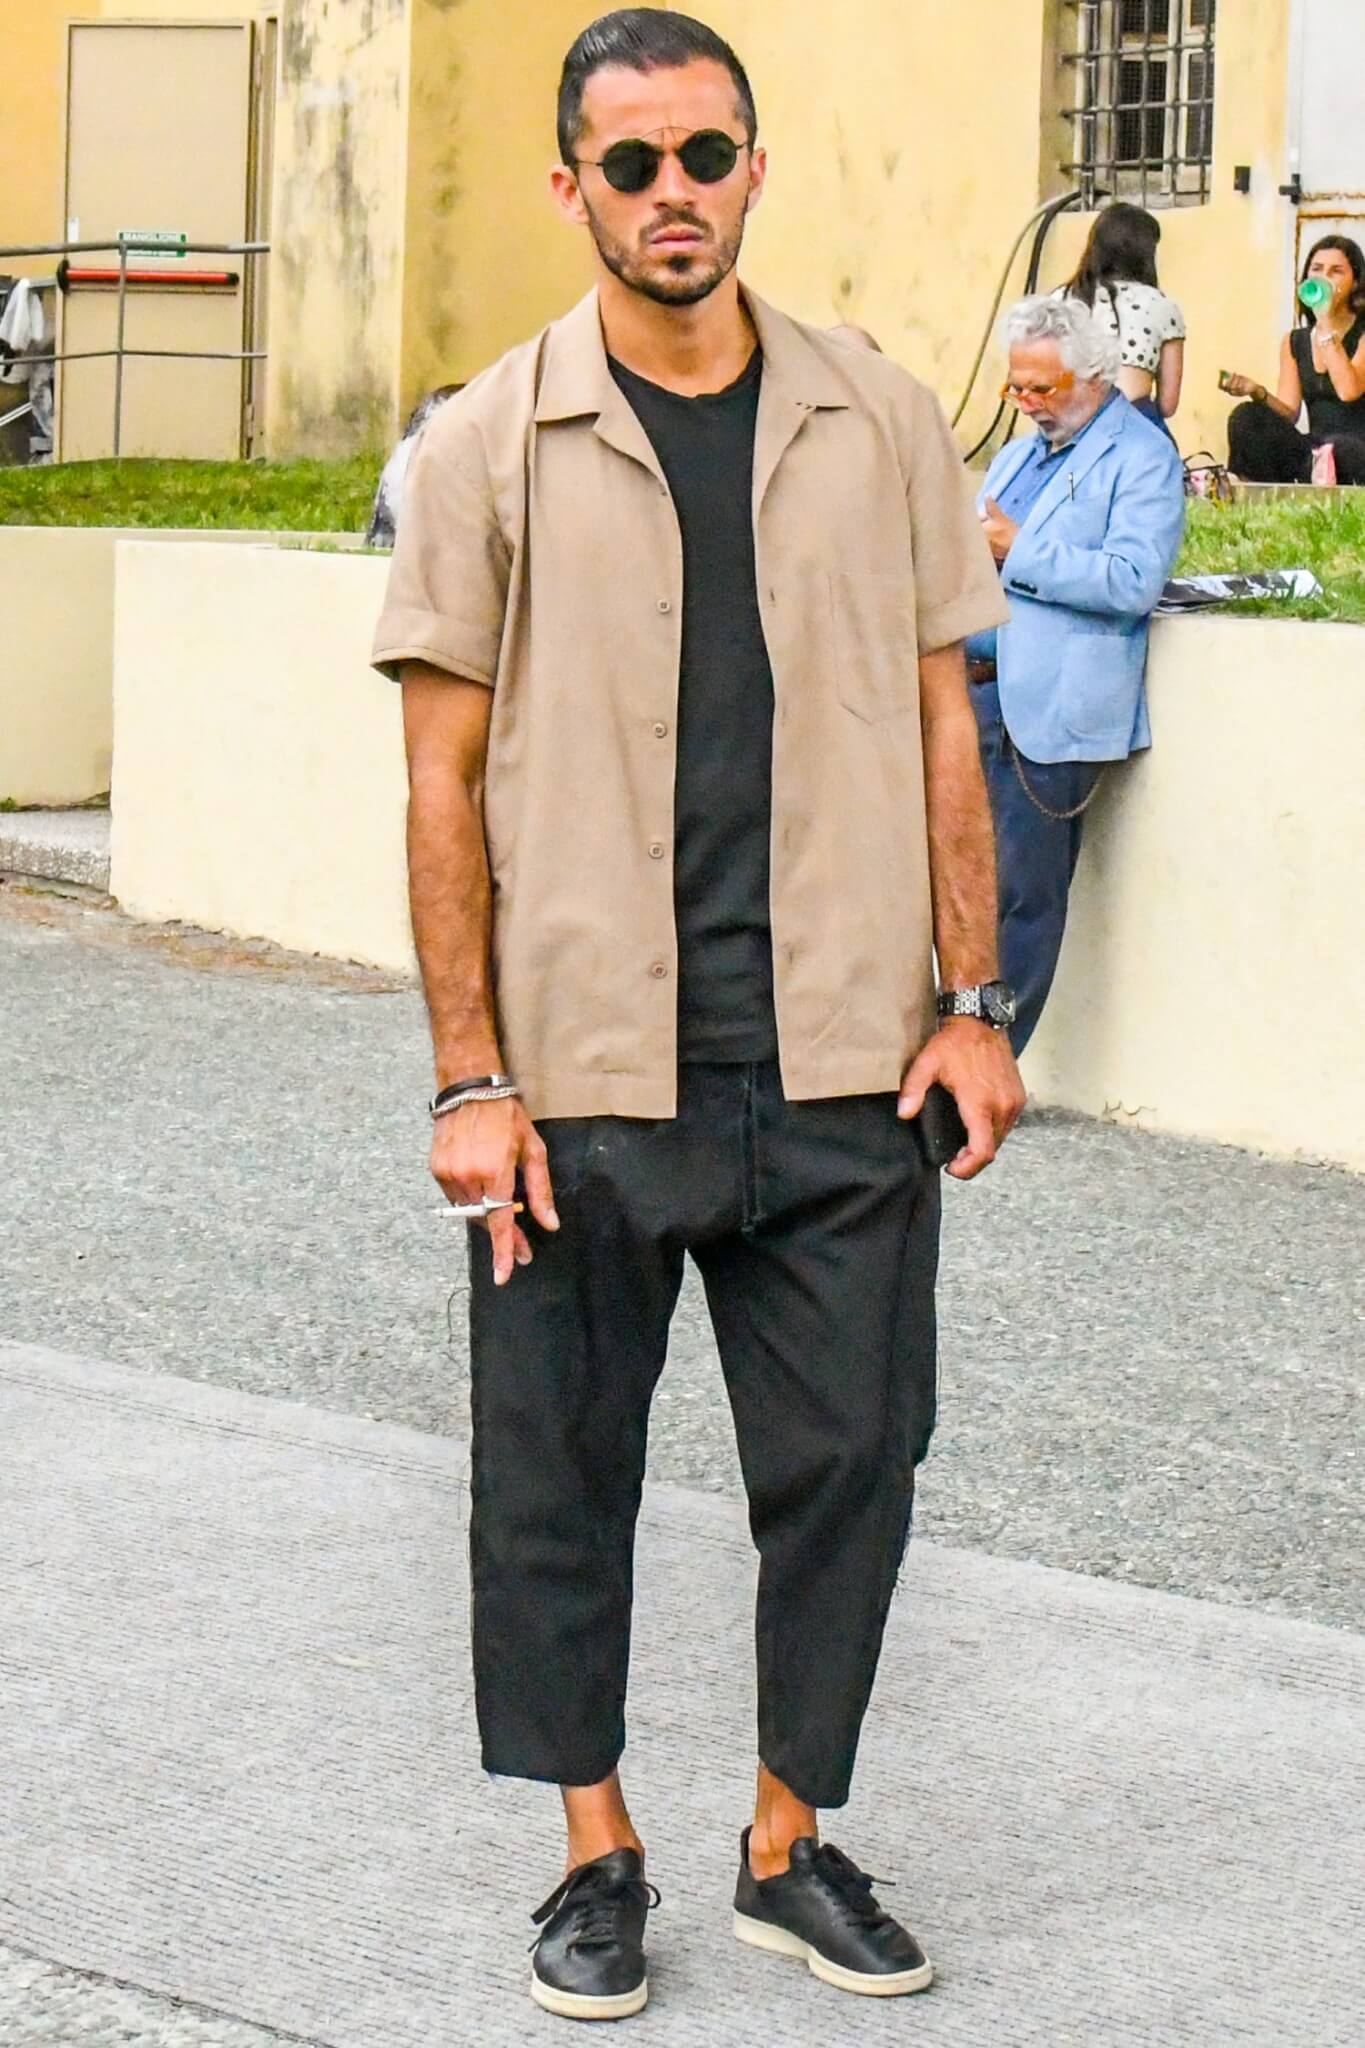 レザースニーカーでメンズコーデに高級感と品格をプラス おすすめのアイテムと着こなしを紹介 メンズファッションメディア Otokomaeotokomae 男前研究所